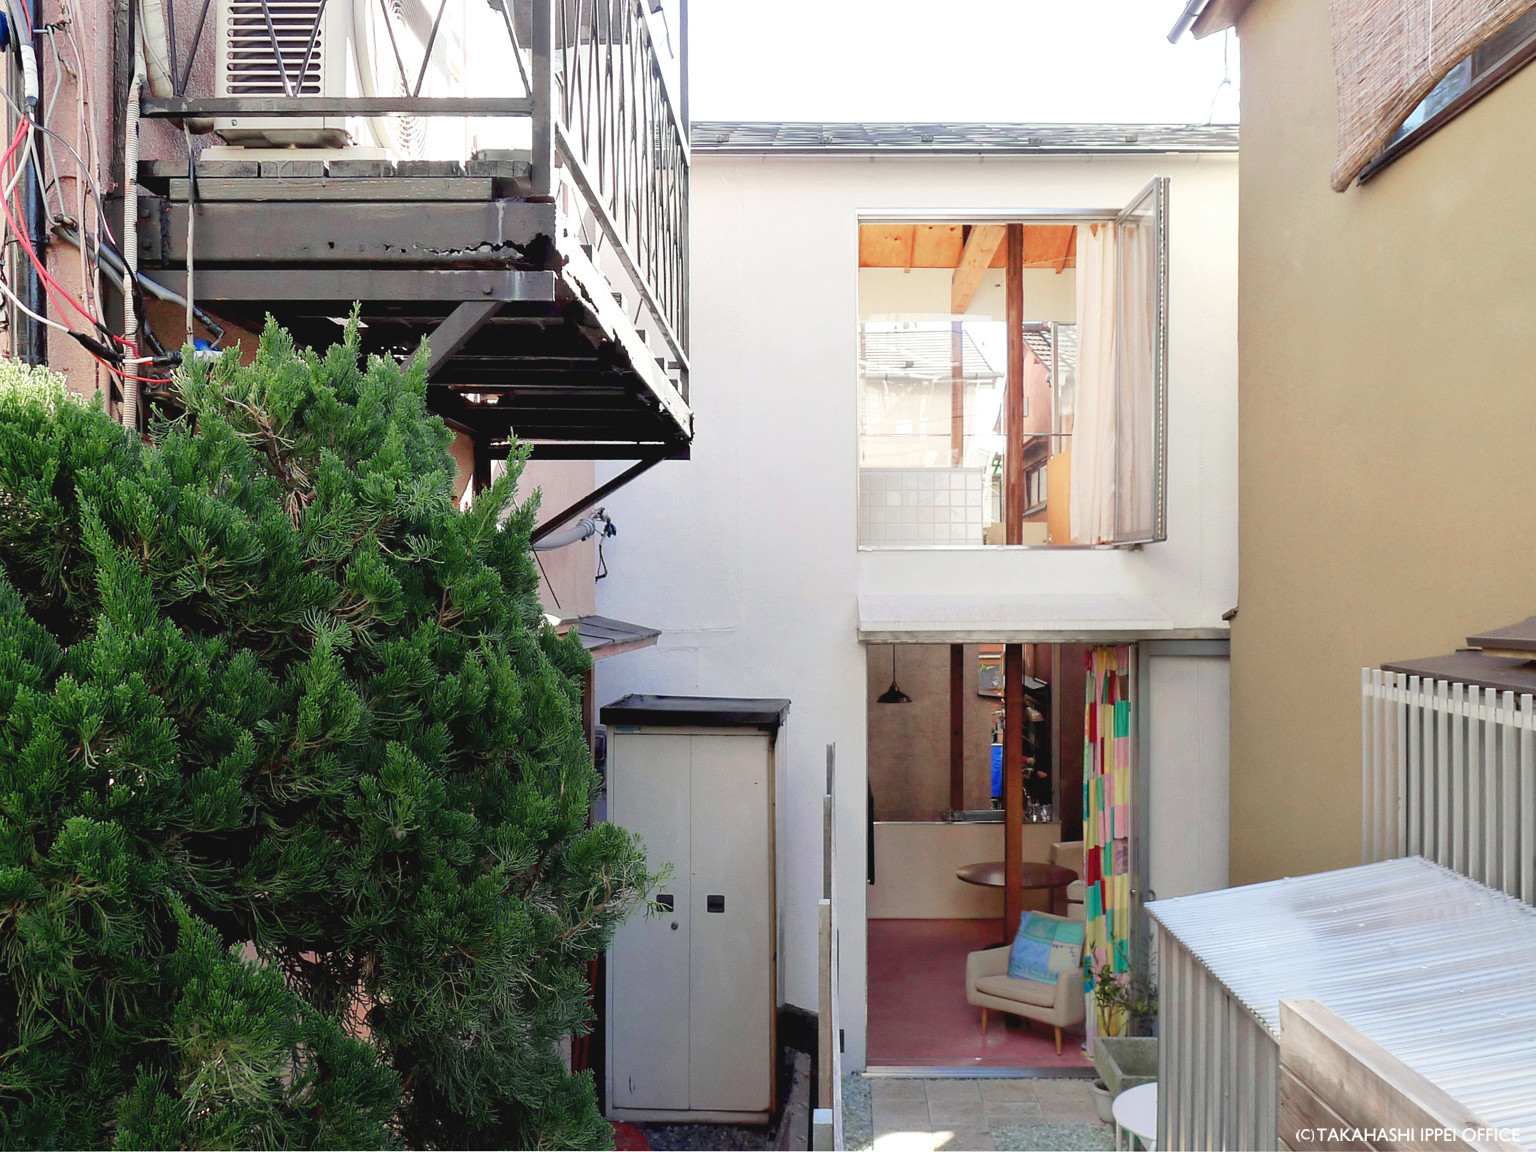 隠居を希望する建主のための築45年になる木造家屋の改修。敷地は東京都内の木造密集地域に位置し、周囲を家屋に囲まれている。路地に接続する奥行6mのアプローチを経て内部へアクセスする。 | Casa O